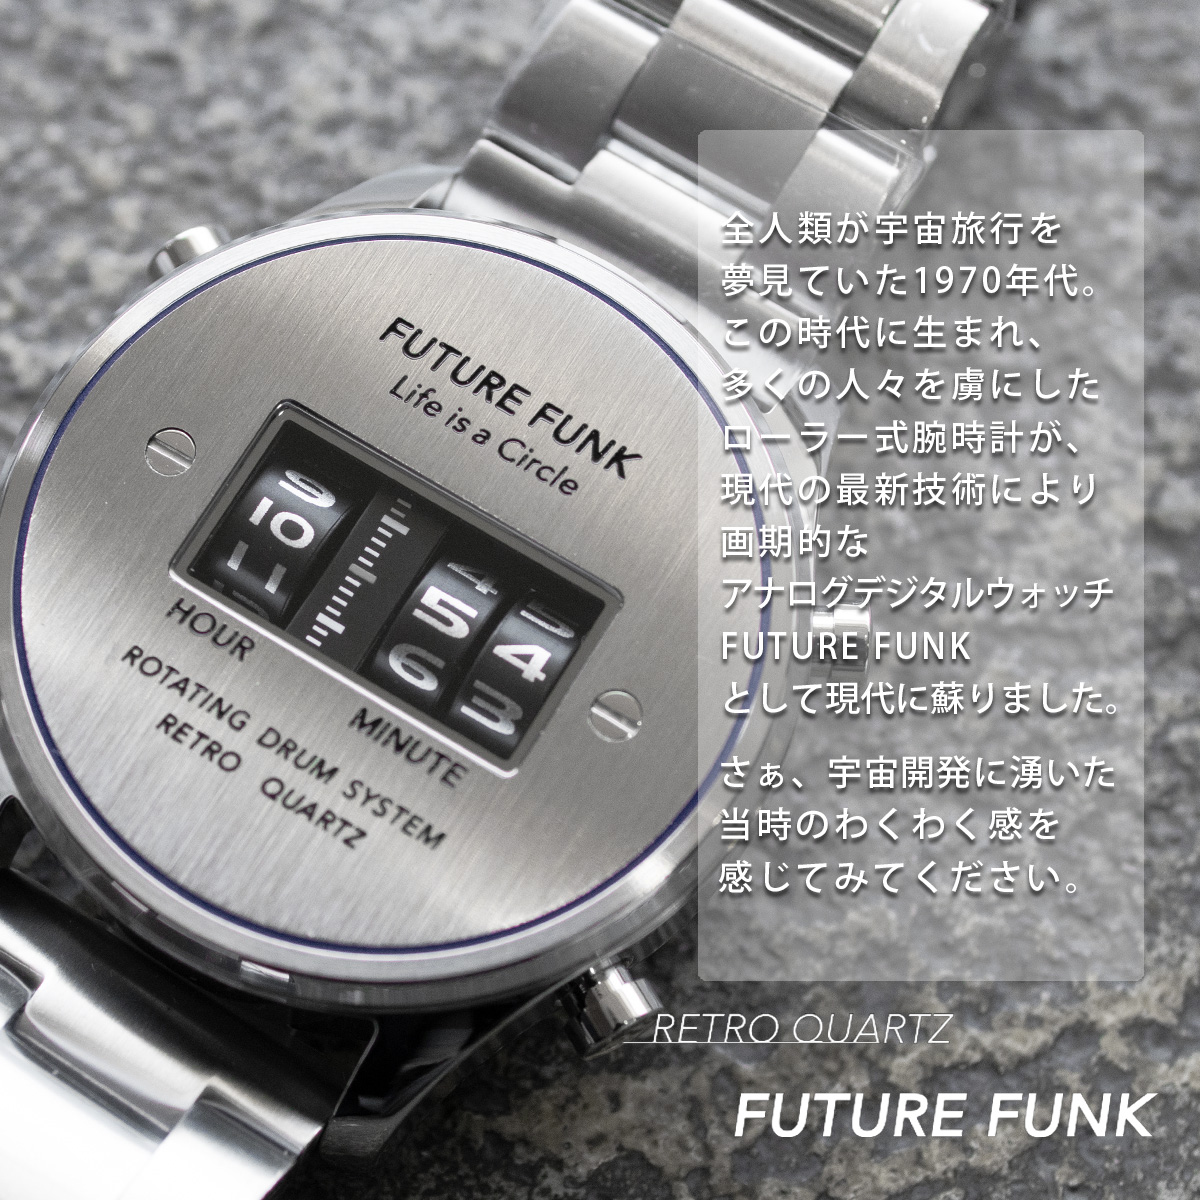 楽天市場 Future Funk フューチャーファンク Ff102 Svbu Mt クオーツ腕時計 メンズ シルバー アナログ デジタル ウォッチ メタルバンド ギフト プレゼント Sputnicks スプートニクス